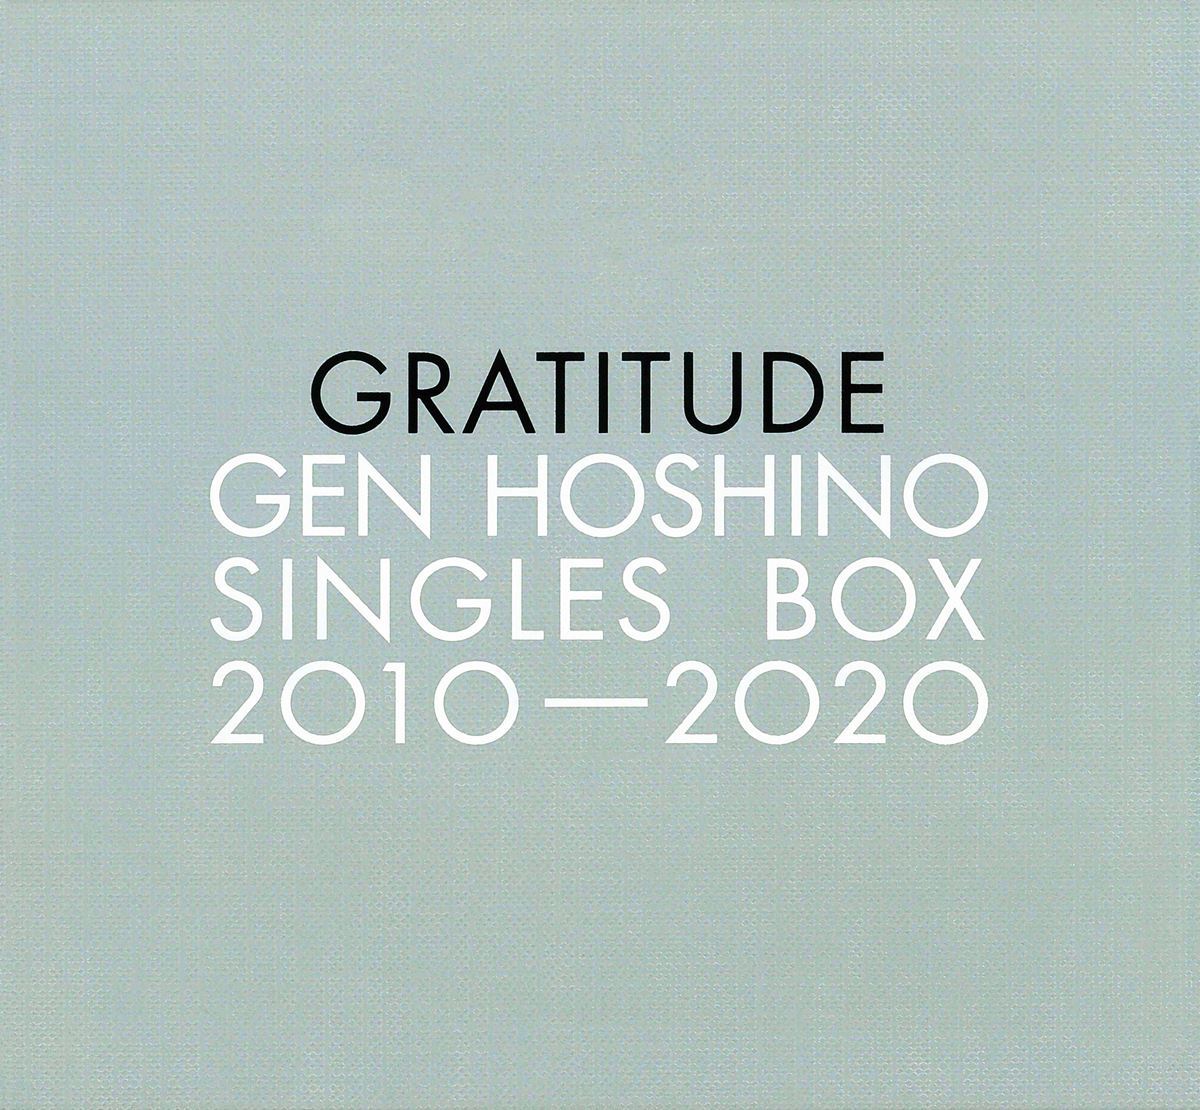 星野源 (ほしのげん) シングルBOX『Gen Hoshino Singles Box "GRATITUDE"』(2020年10月21日発売) 高画質CDジャケット画像 (ジャケ写)